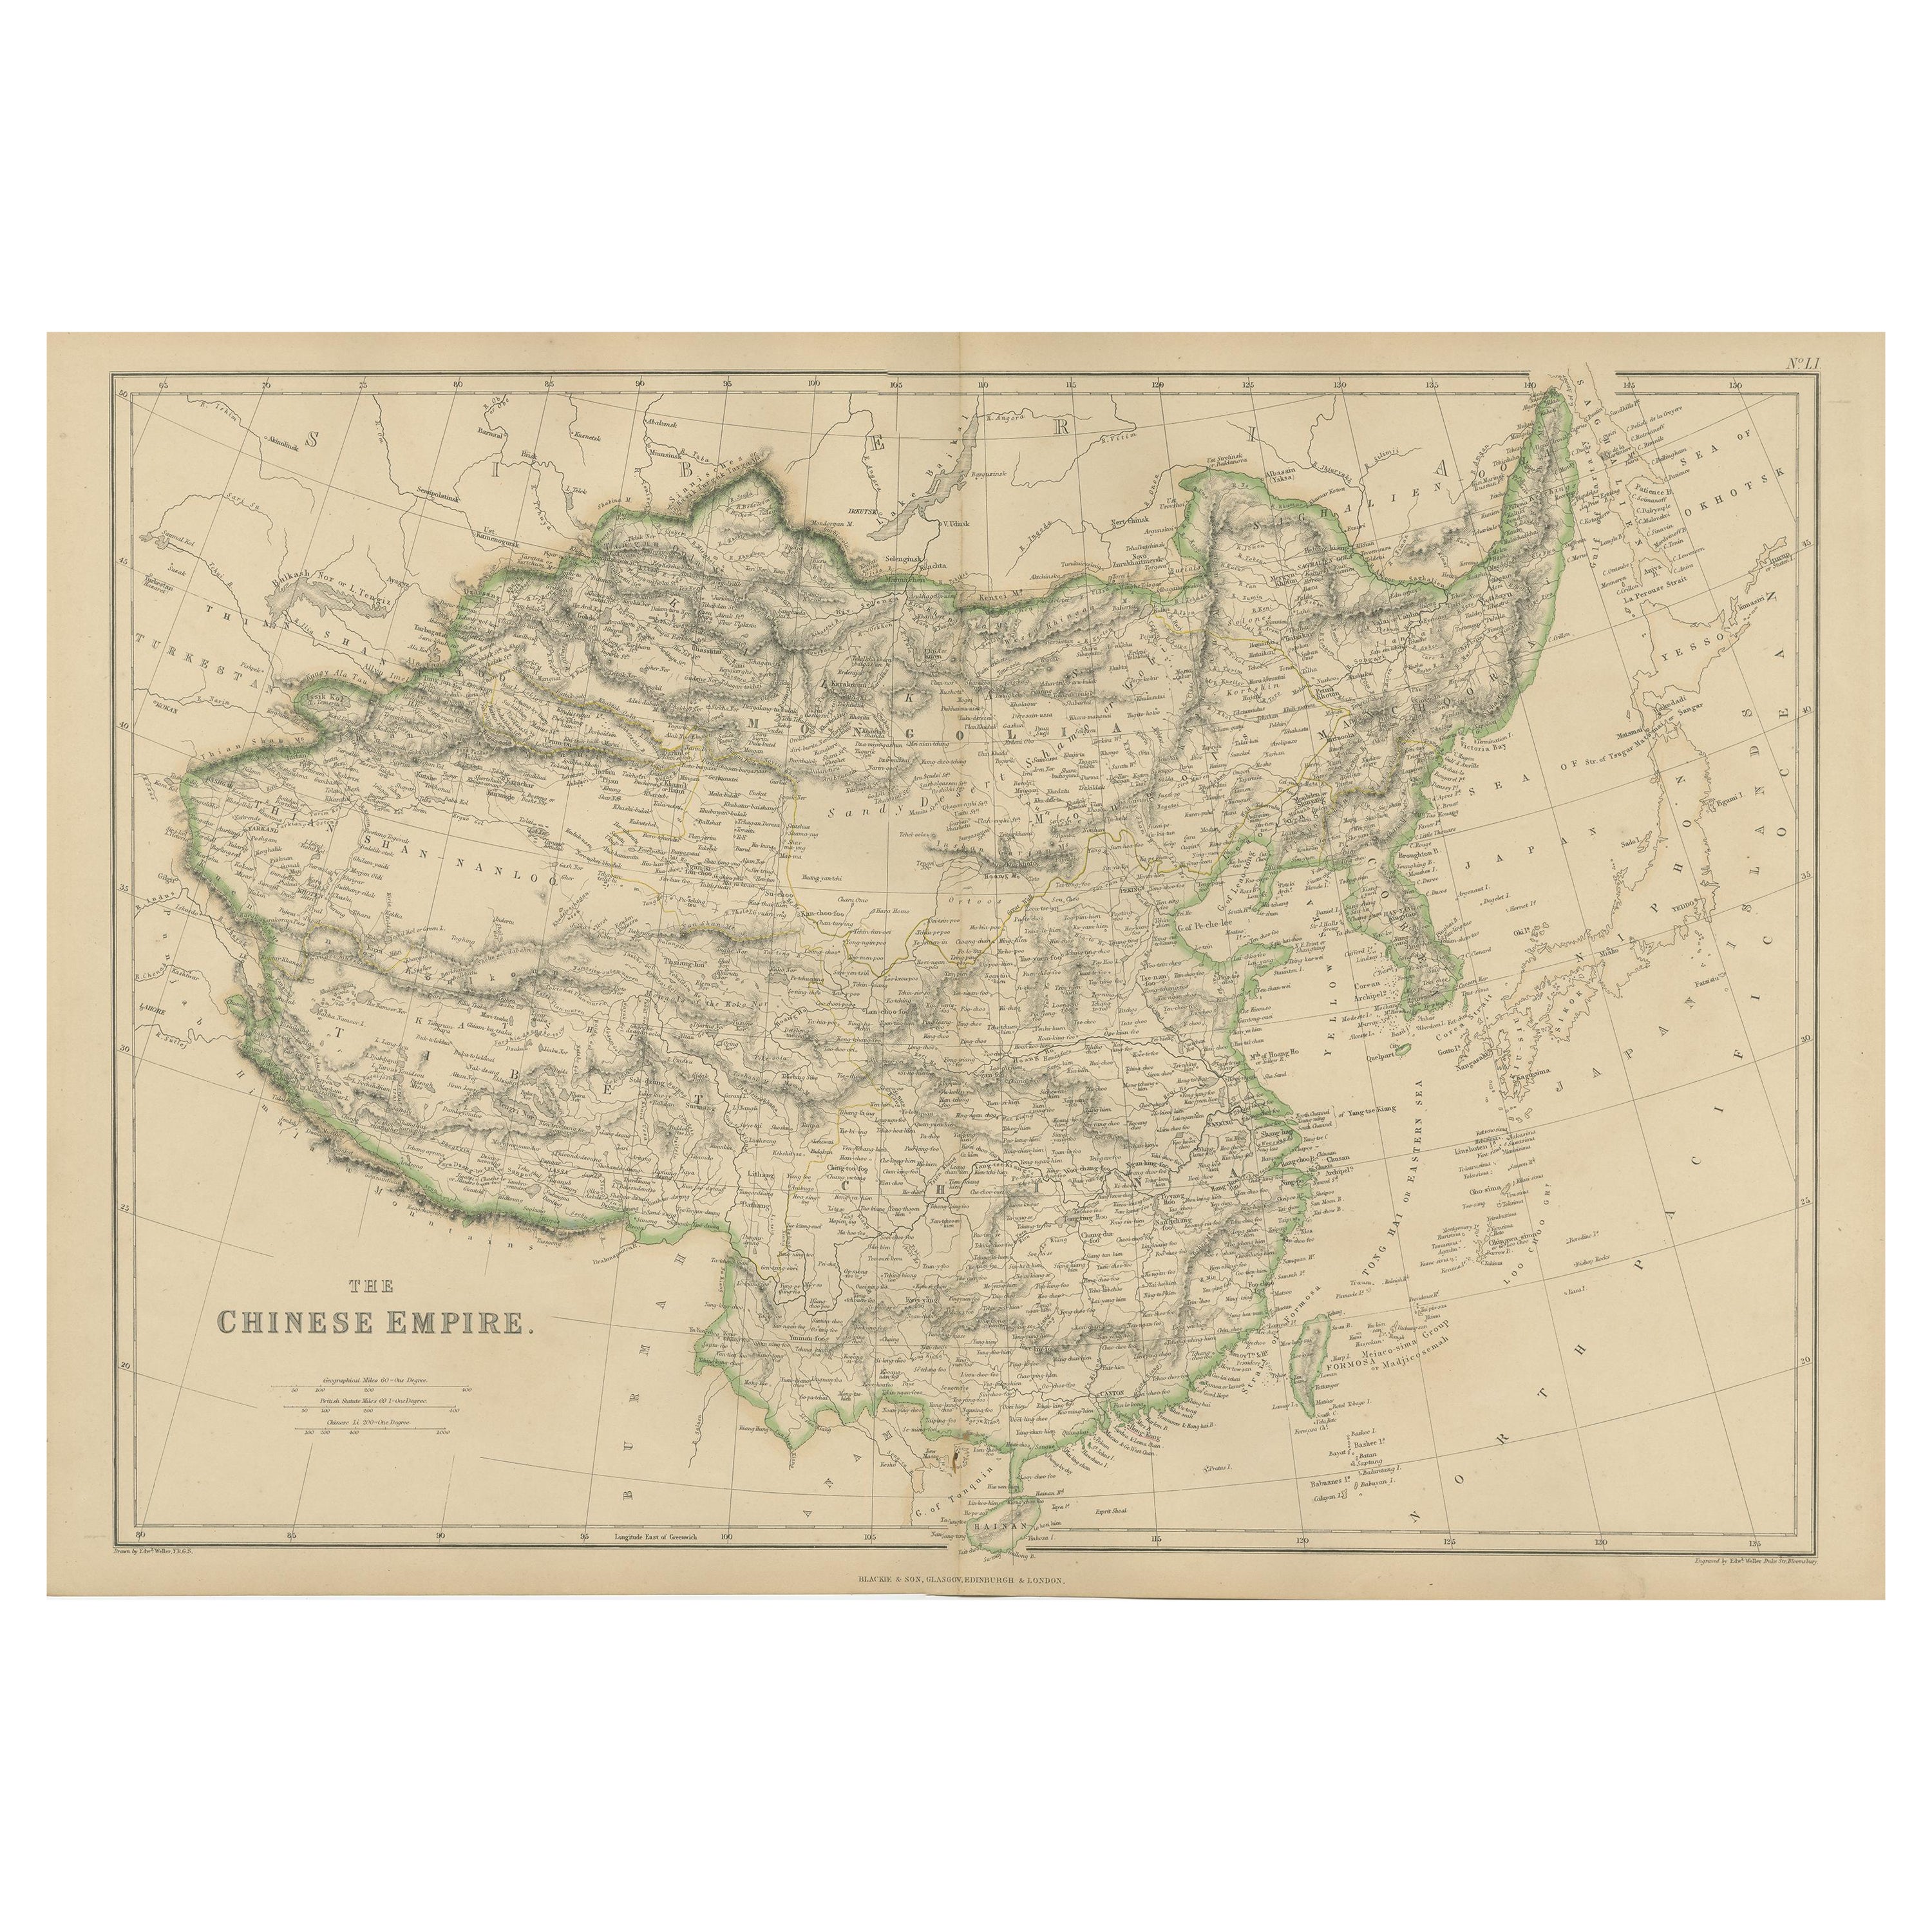 Carte ancienne de l'Empire chinois par W. G. Blackie, 1859